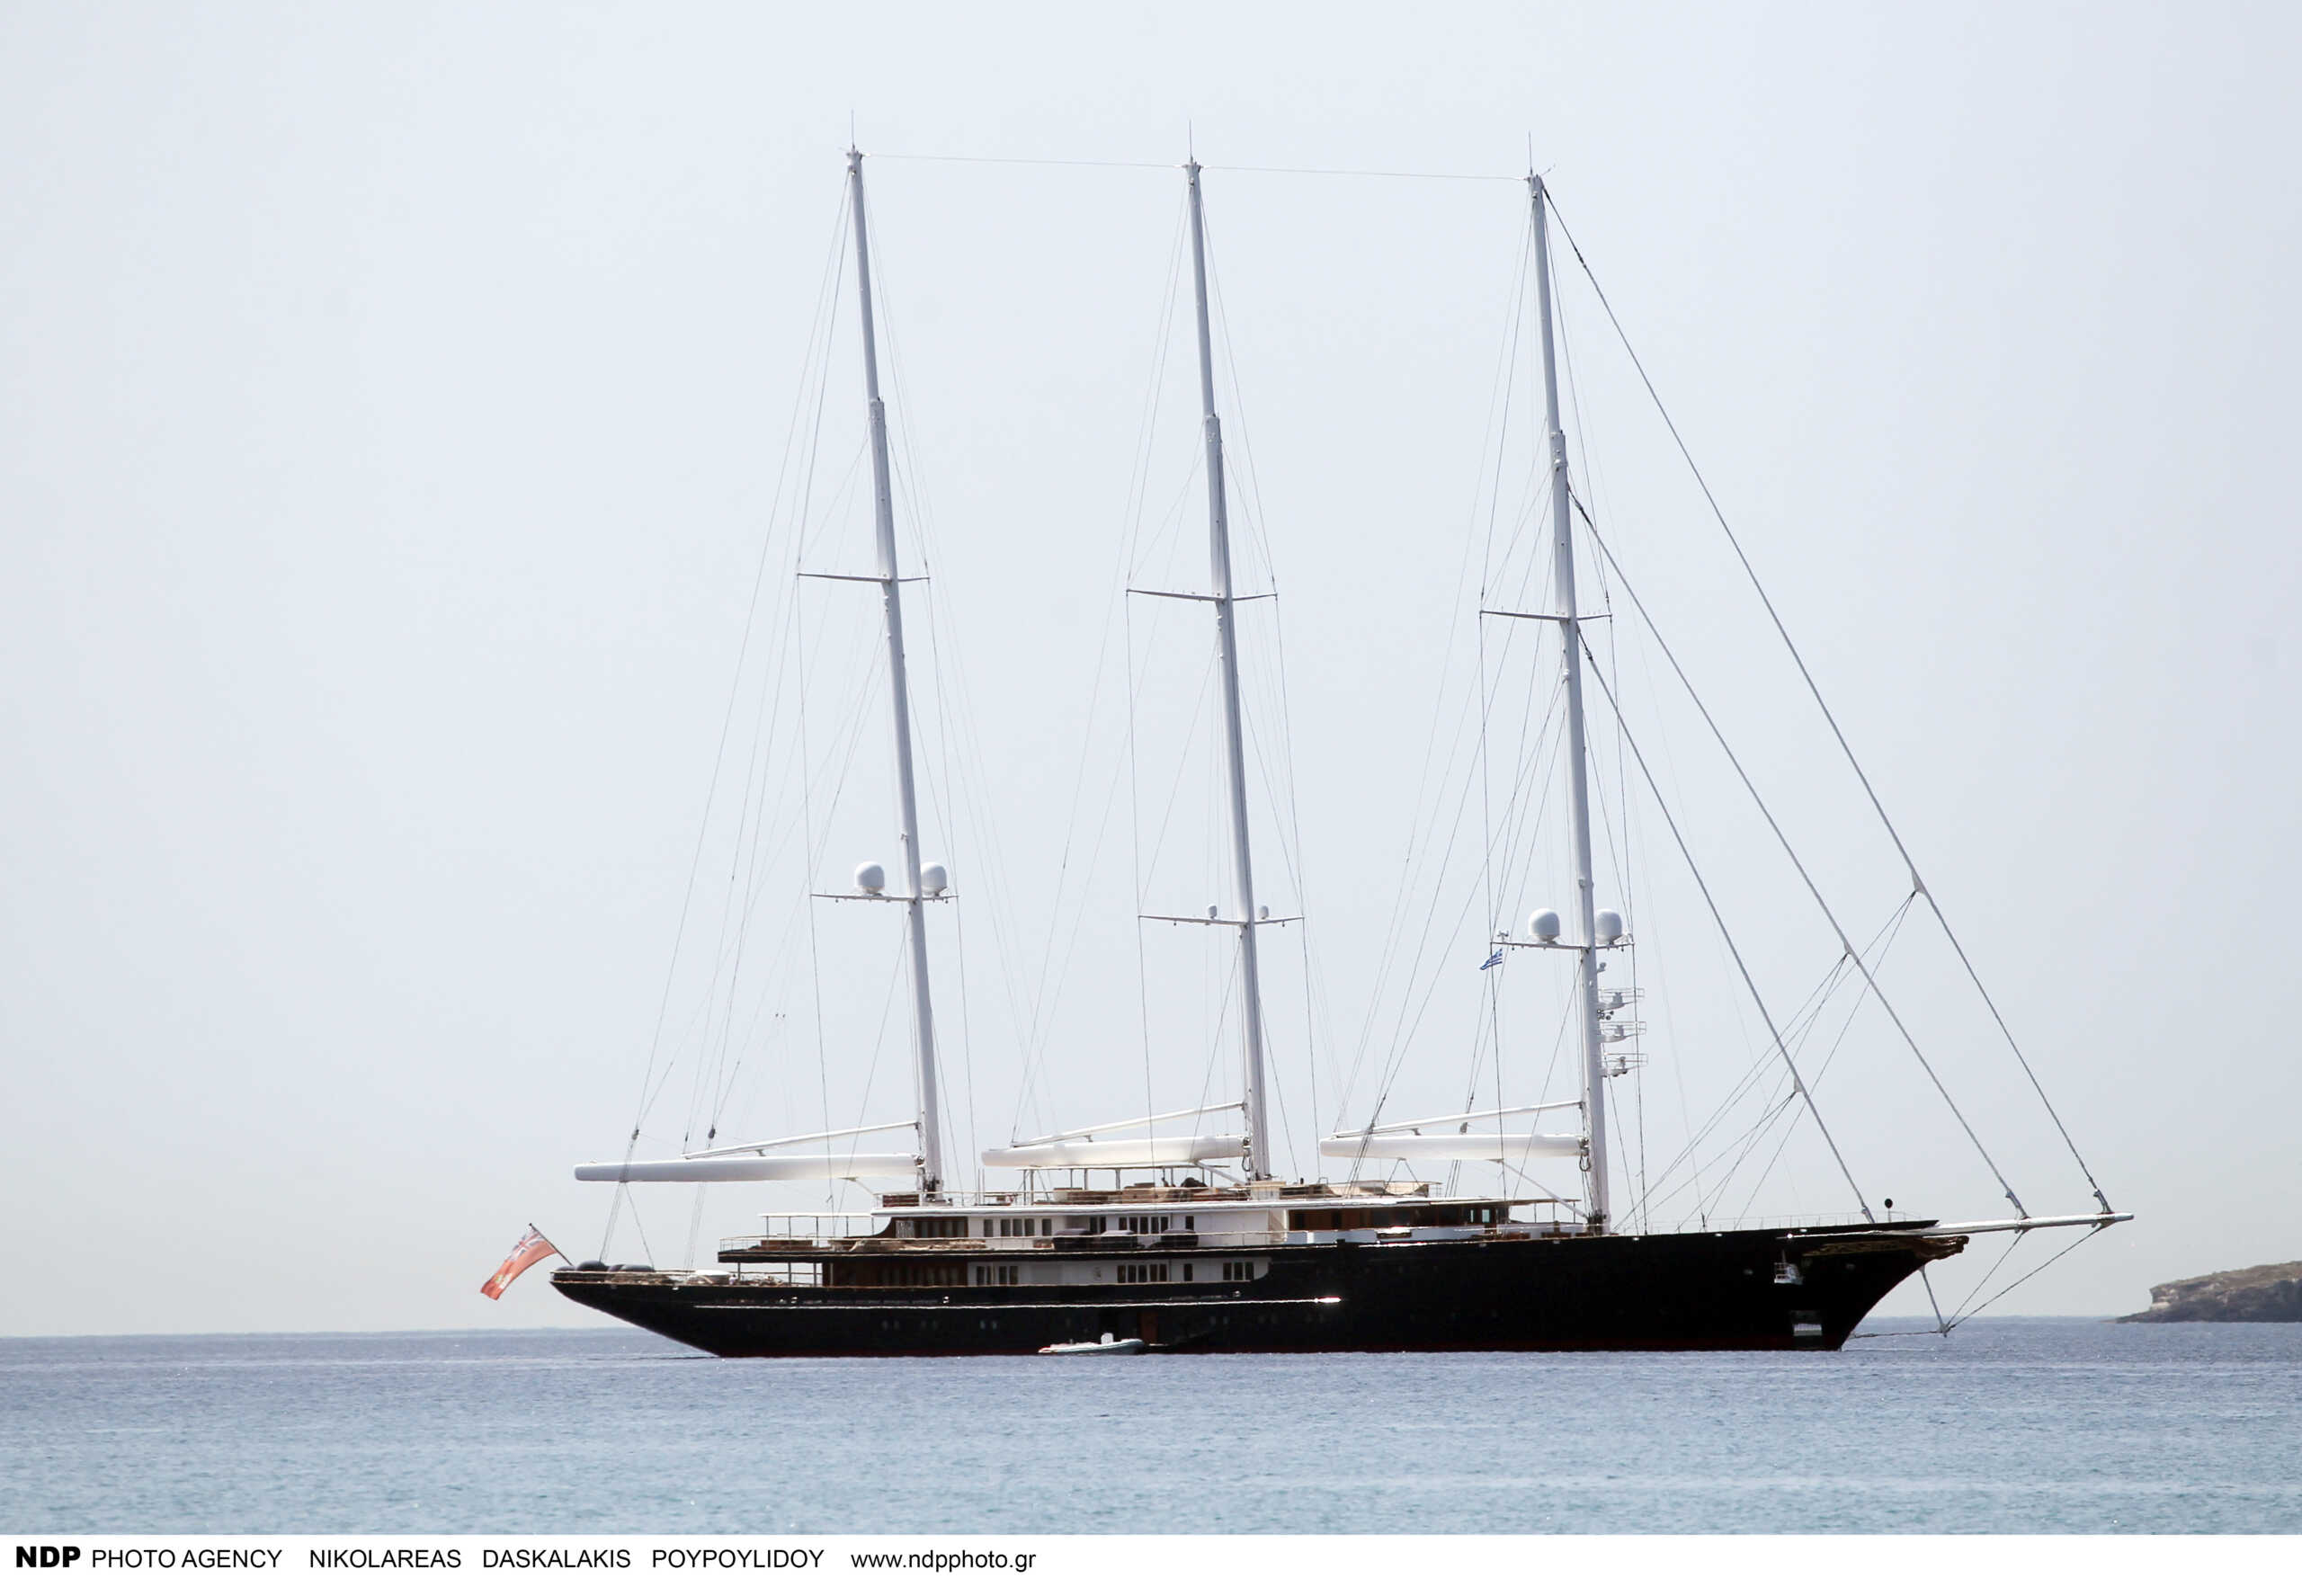 Ο Τζεφ Μπέζος «πάρκαρε» το superyacht του στην Βάρκιζα – Φωτογραφίες του εντυπωσιακού σκάφους